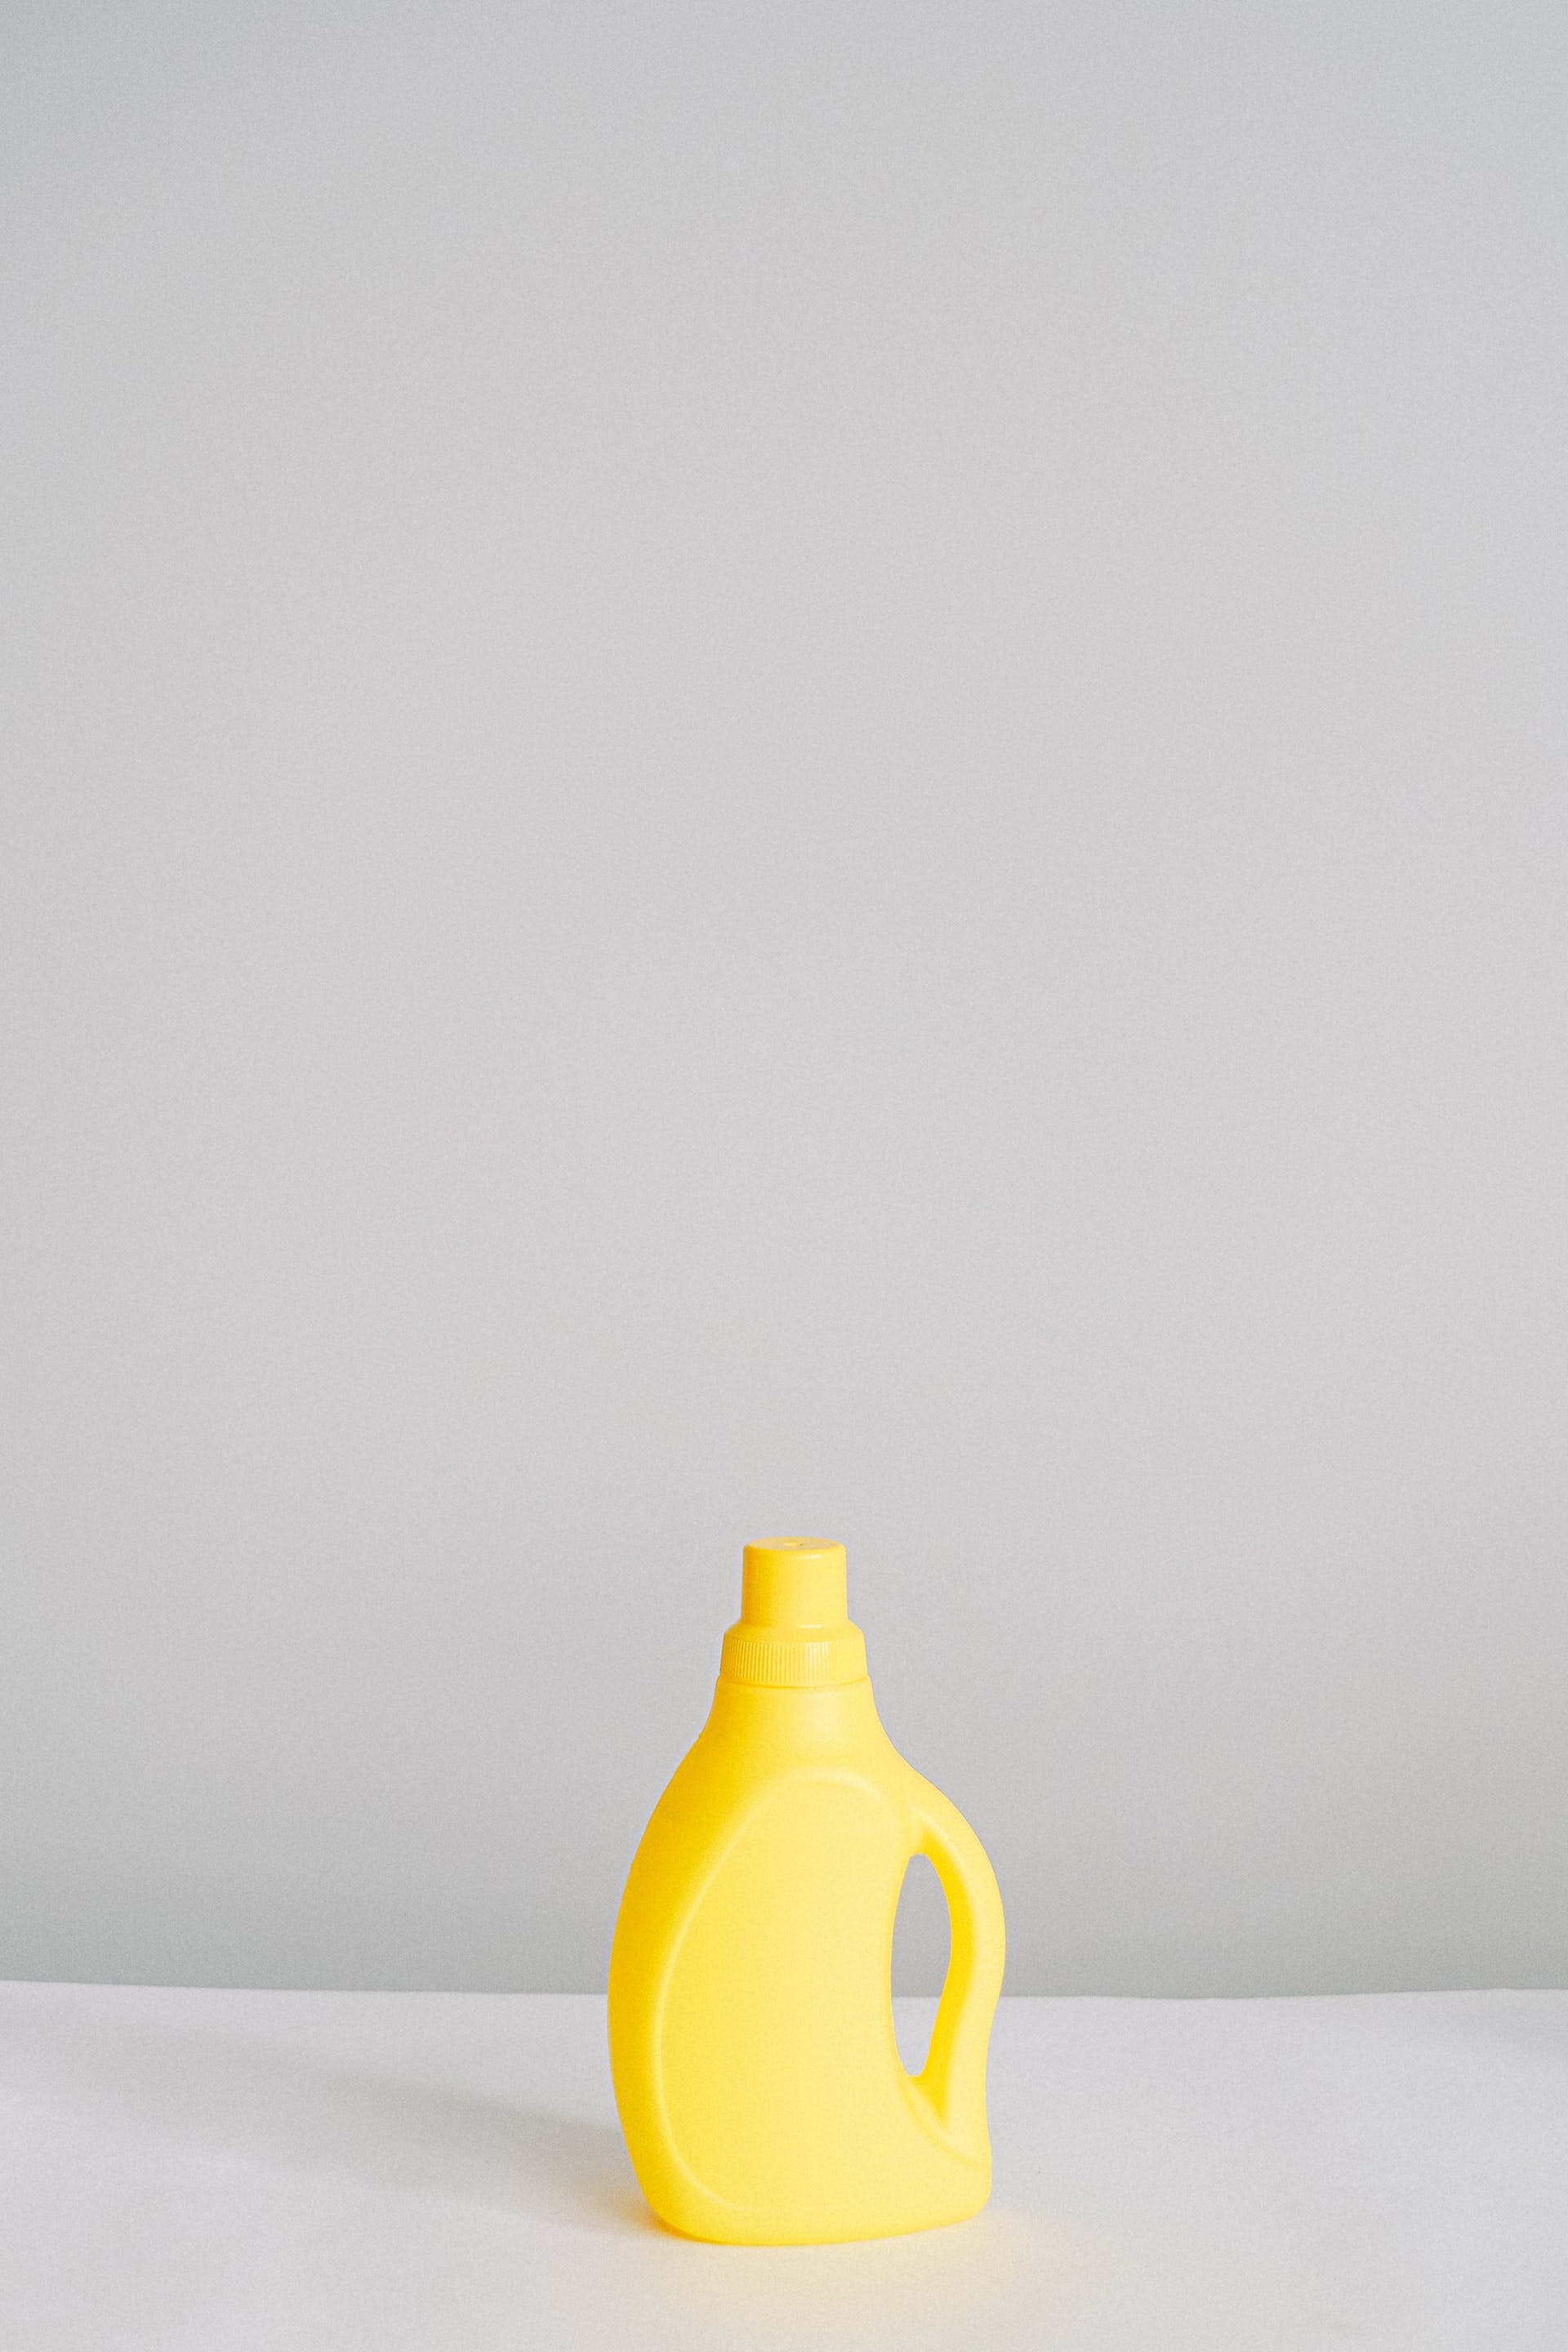 Una botella de color amarillo | Fuente: Pexels